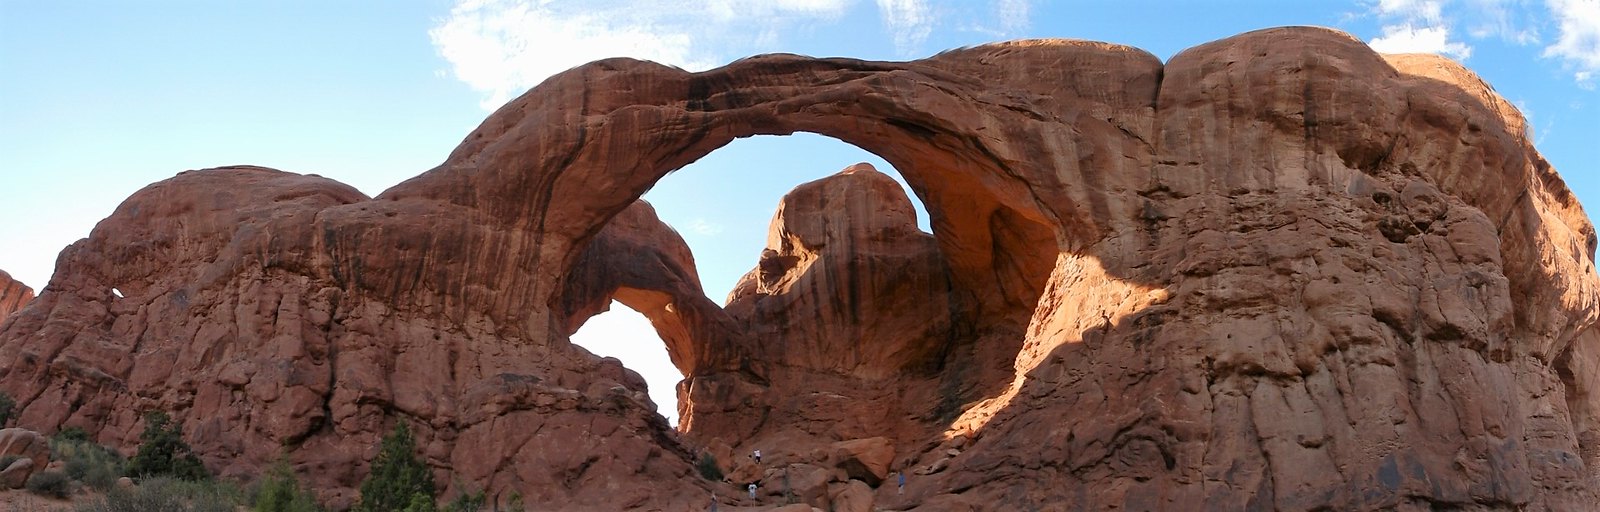 Arches National Park, la maravilla de roca roja - Costa oeste de Estados Unidos: 25 días en ruta por el far west (16)